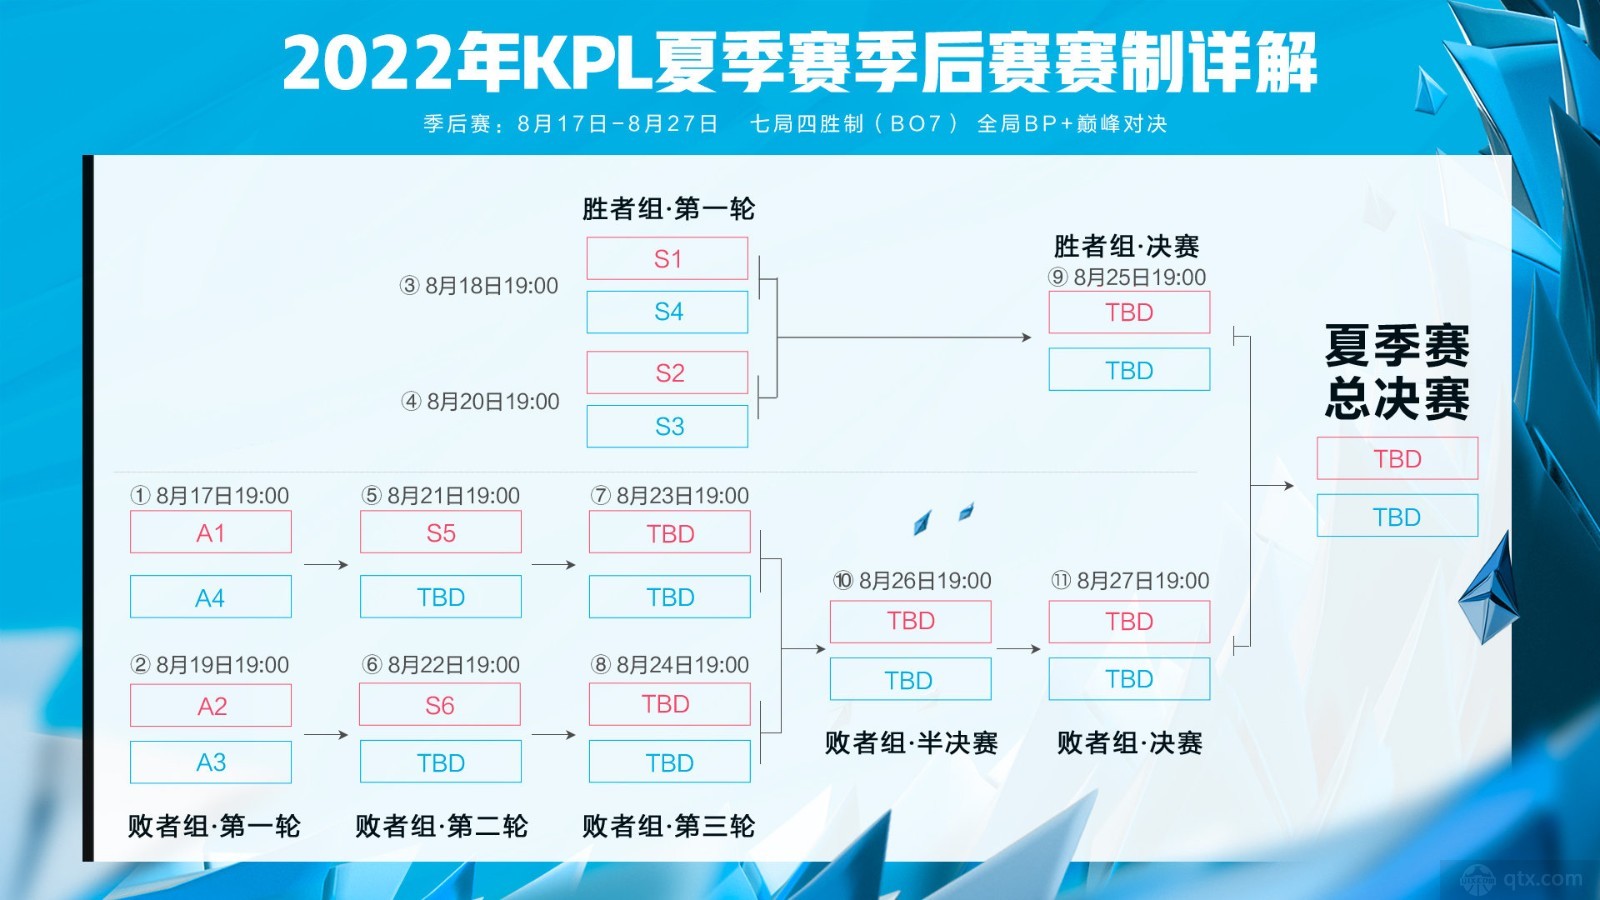 2021年KPL秋季赛季后赛赛程公布-王者荣耀官方网站-腾讯游戏